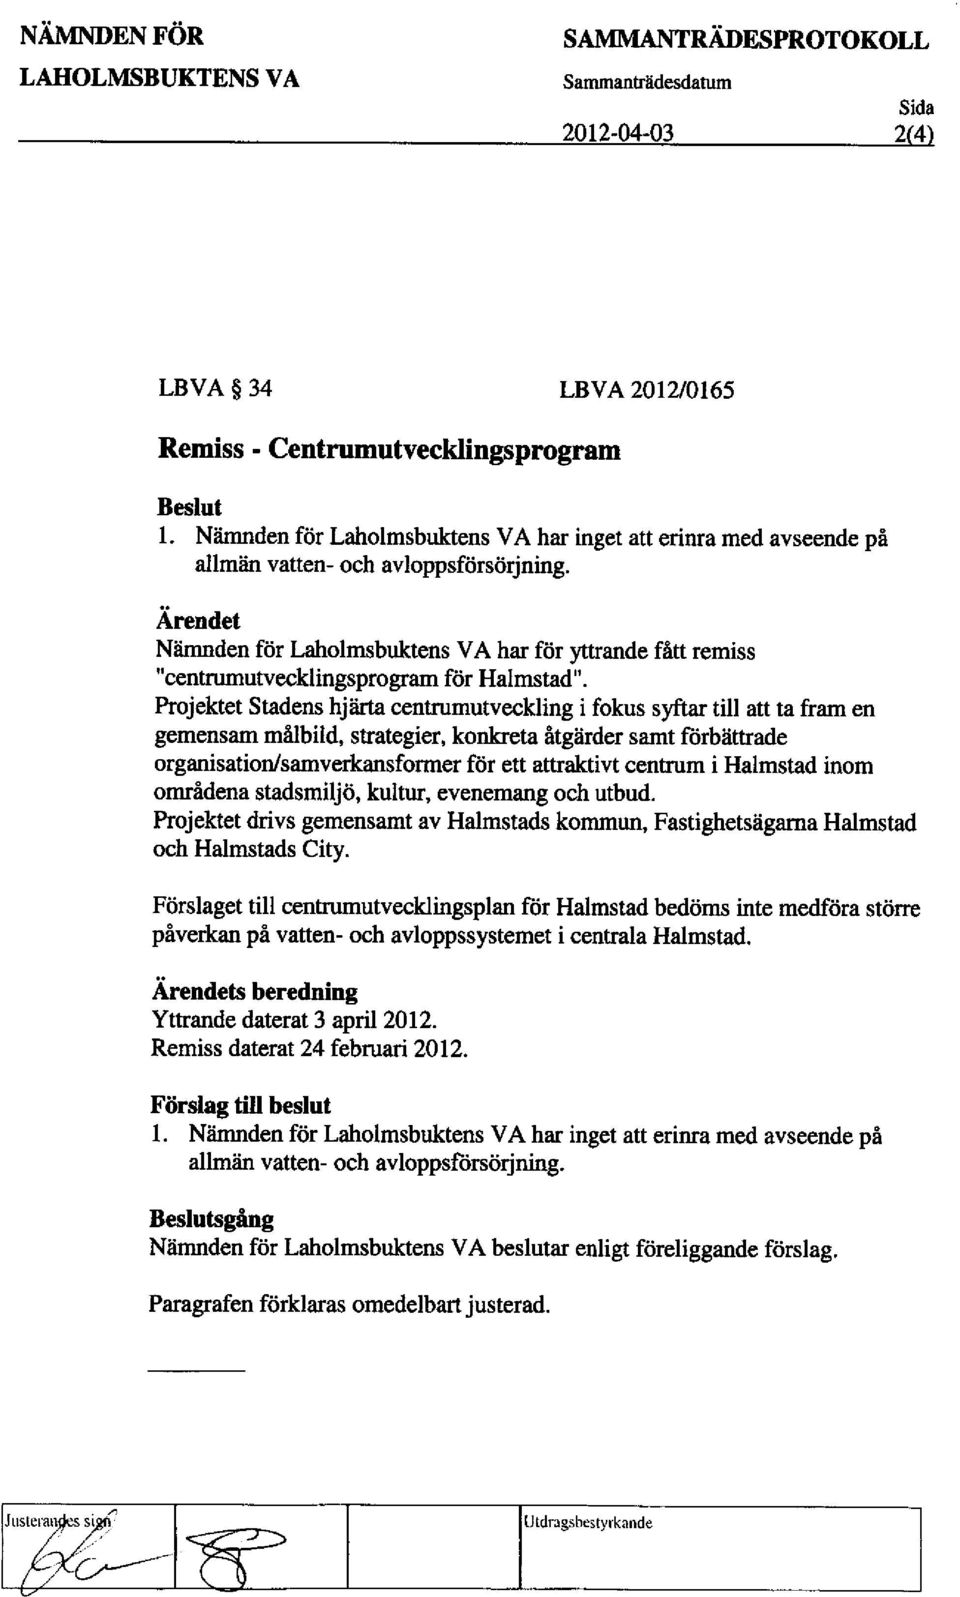 Niimnden f6r Laholmsbuktens VA har far yttrande fitt remiss "centrumutvecklingsprogram for Halmstad".